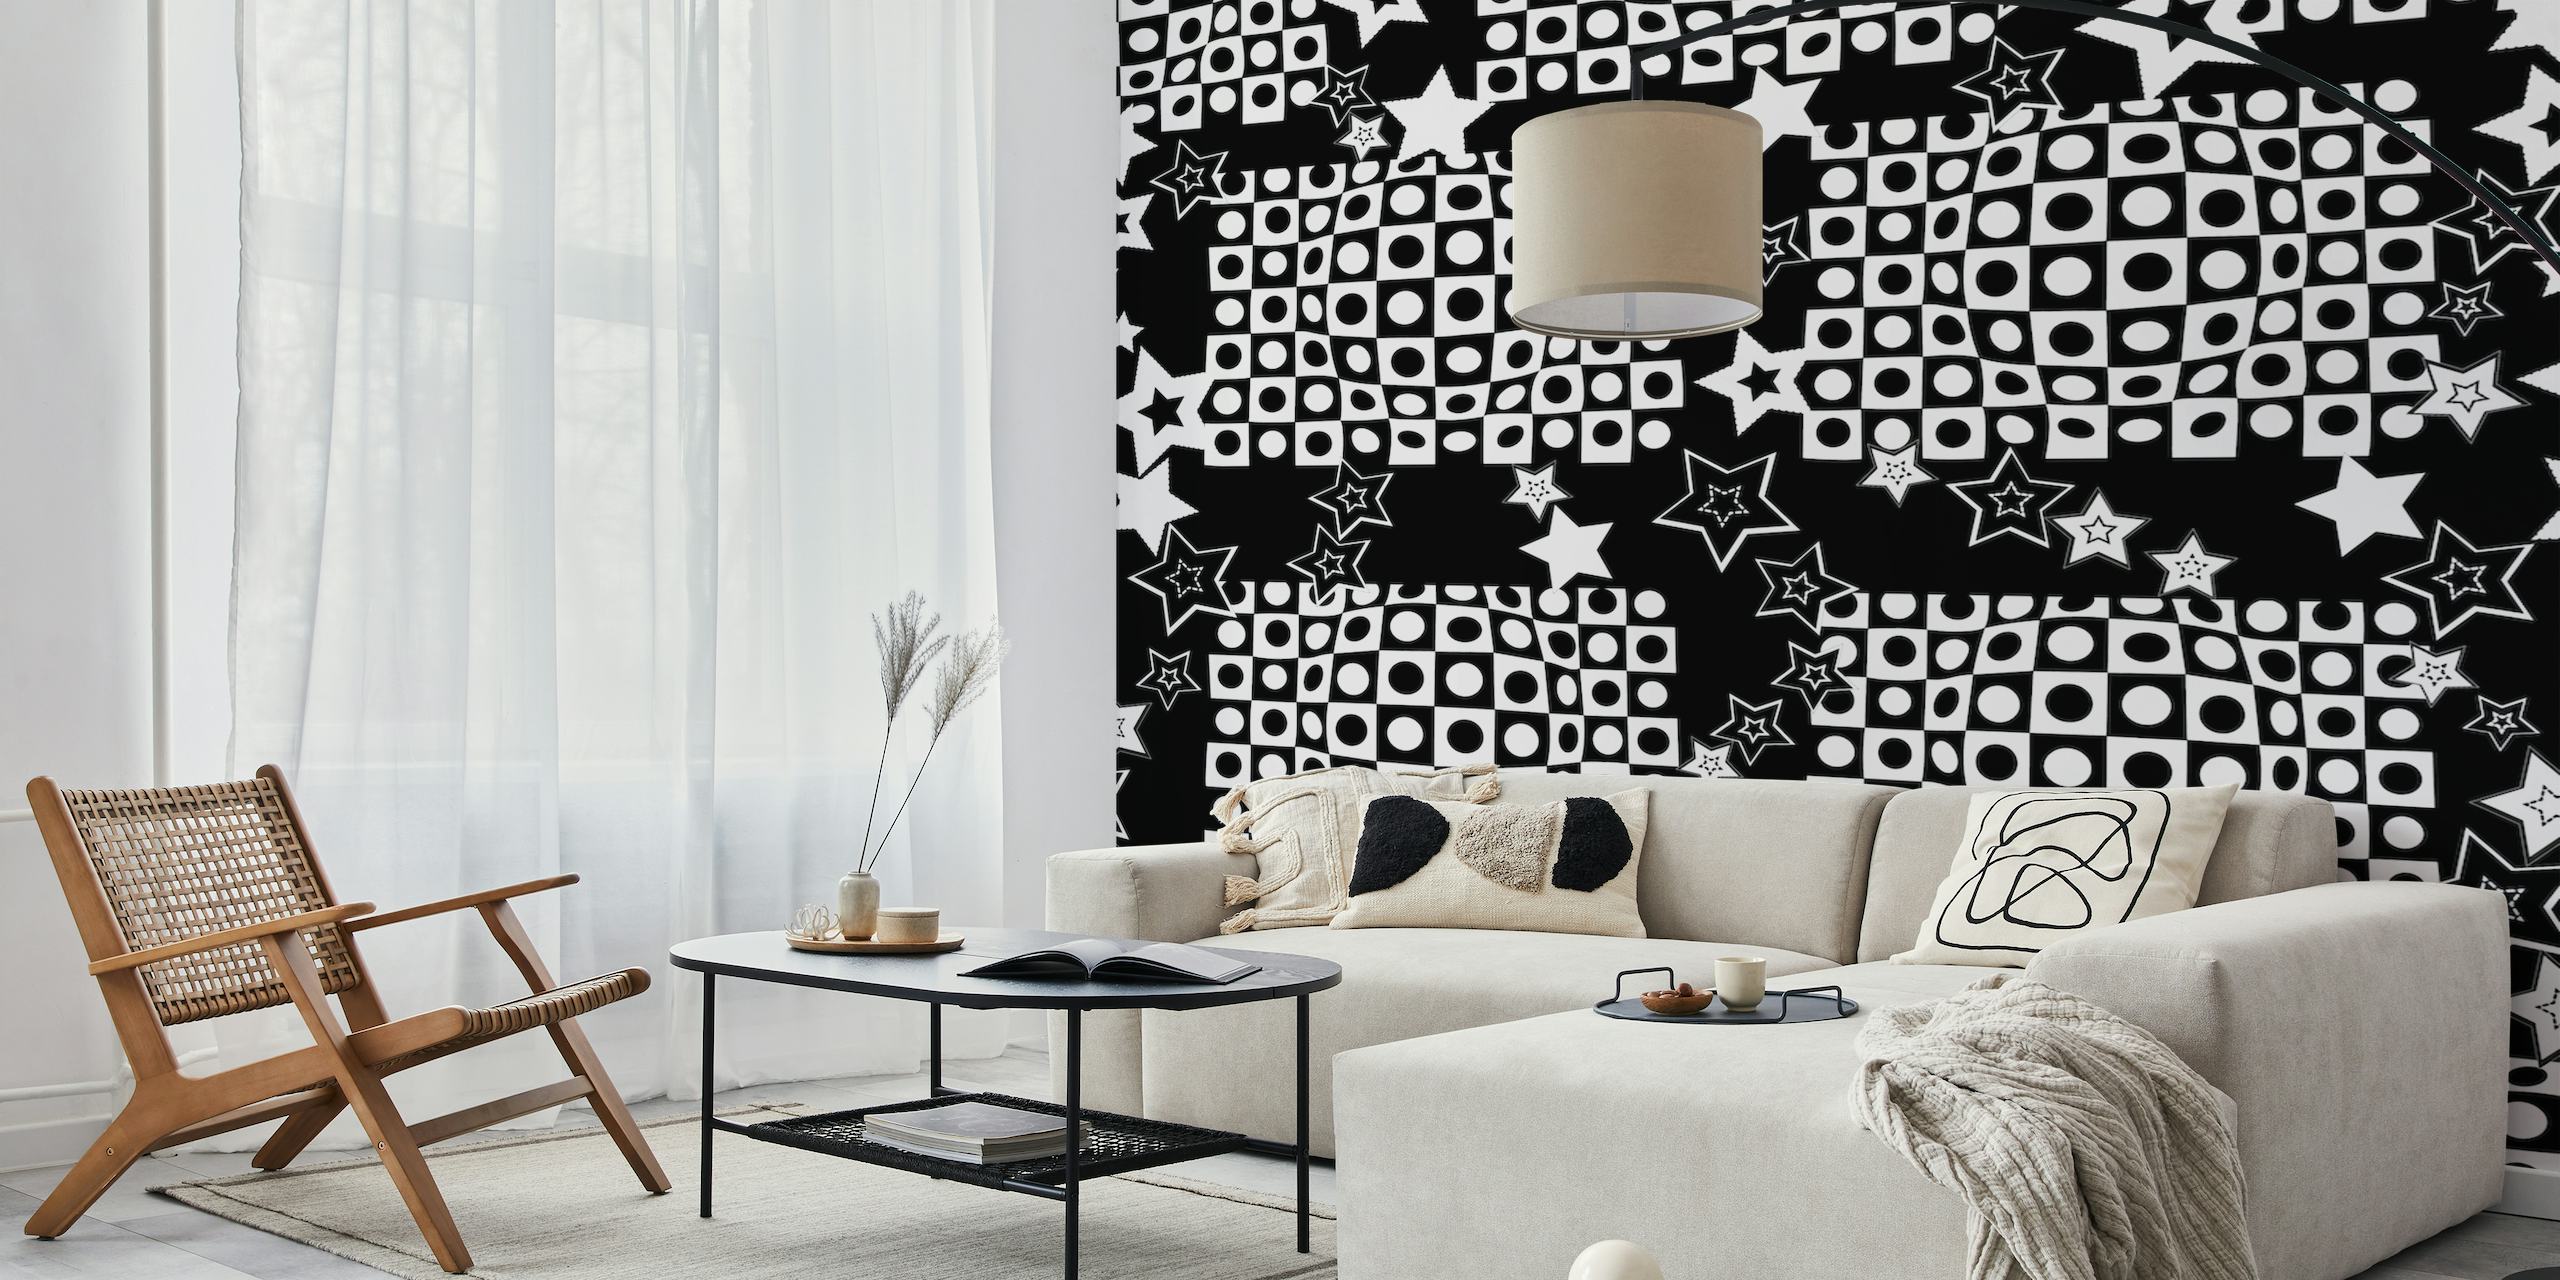 Sort og hvid optisk illusion vægmaleri med stjerner til moderne værelsesindretning